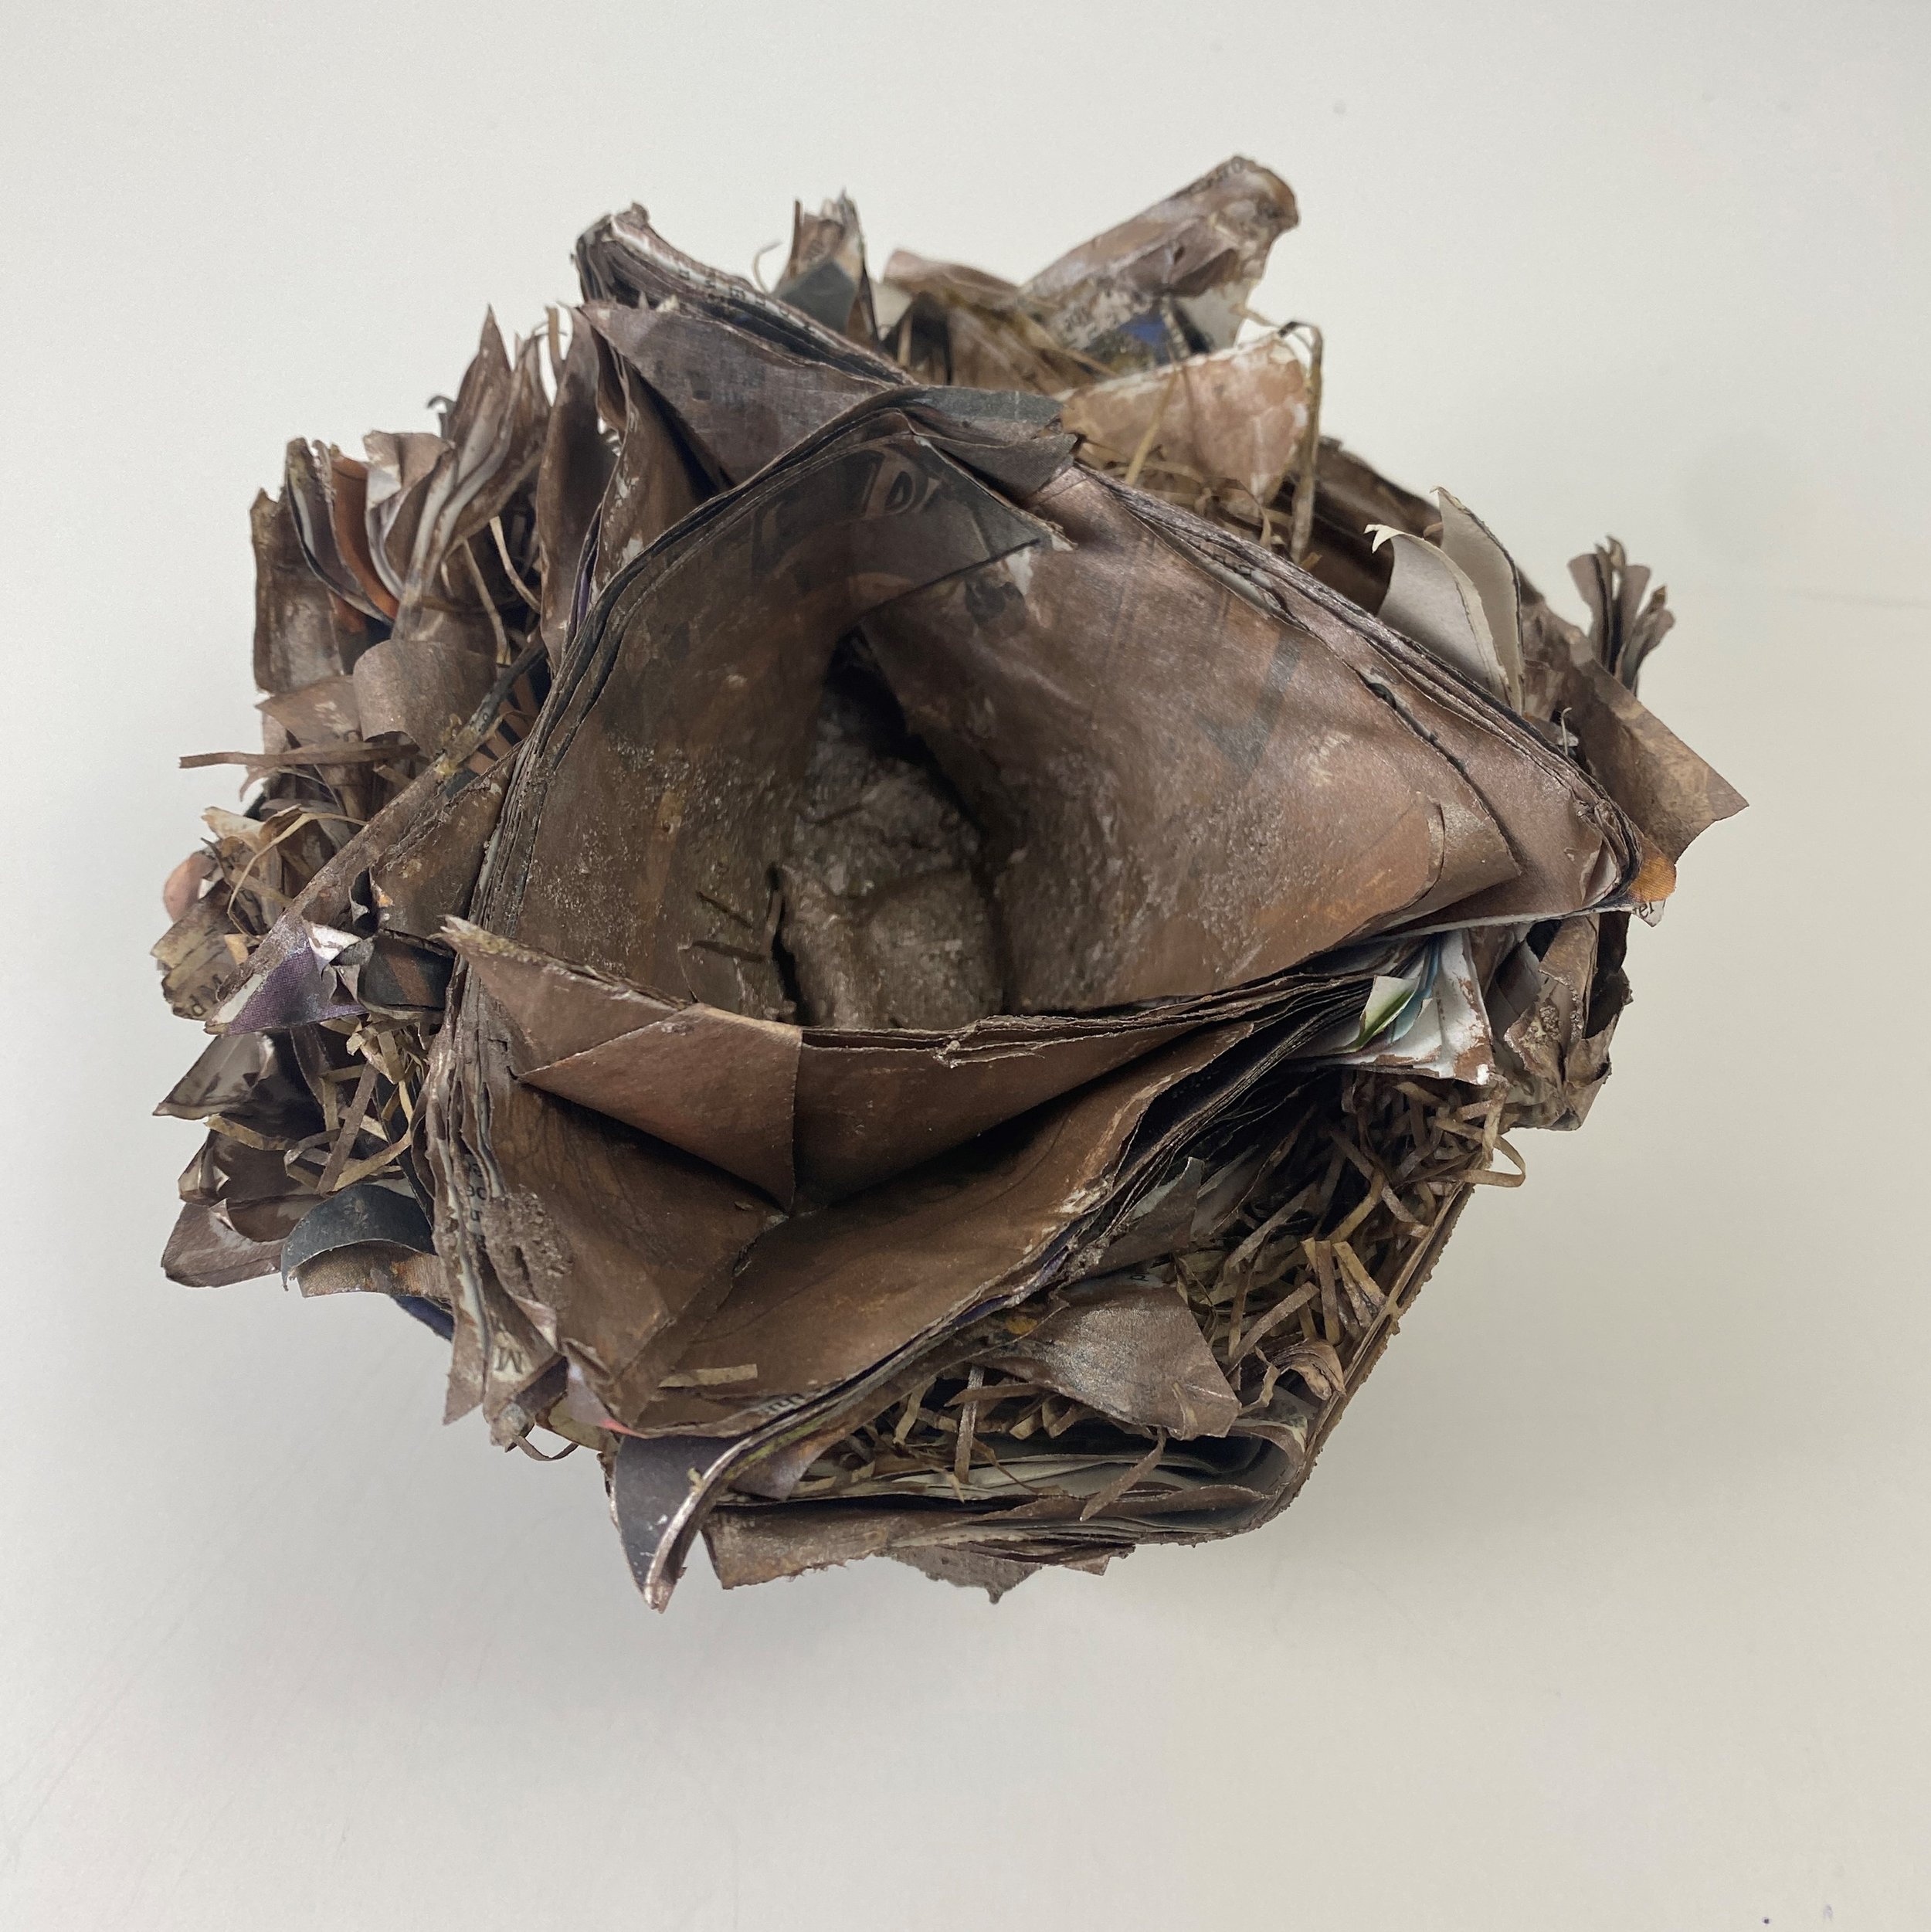   Nested Vessel , sculpture by Sylvia Vander Sluis 